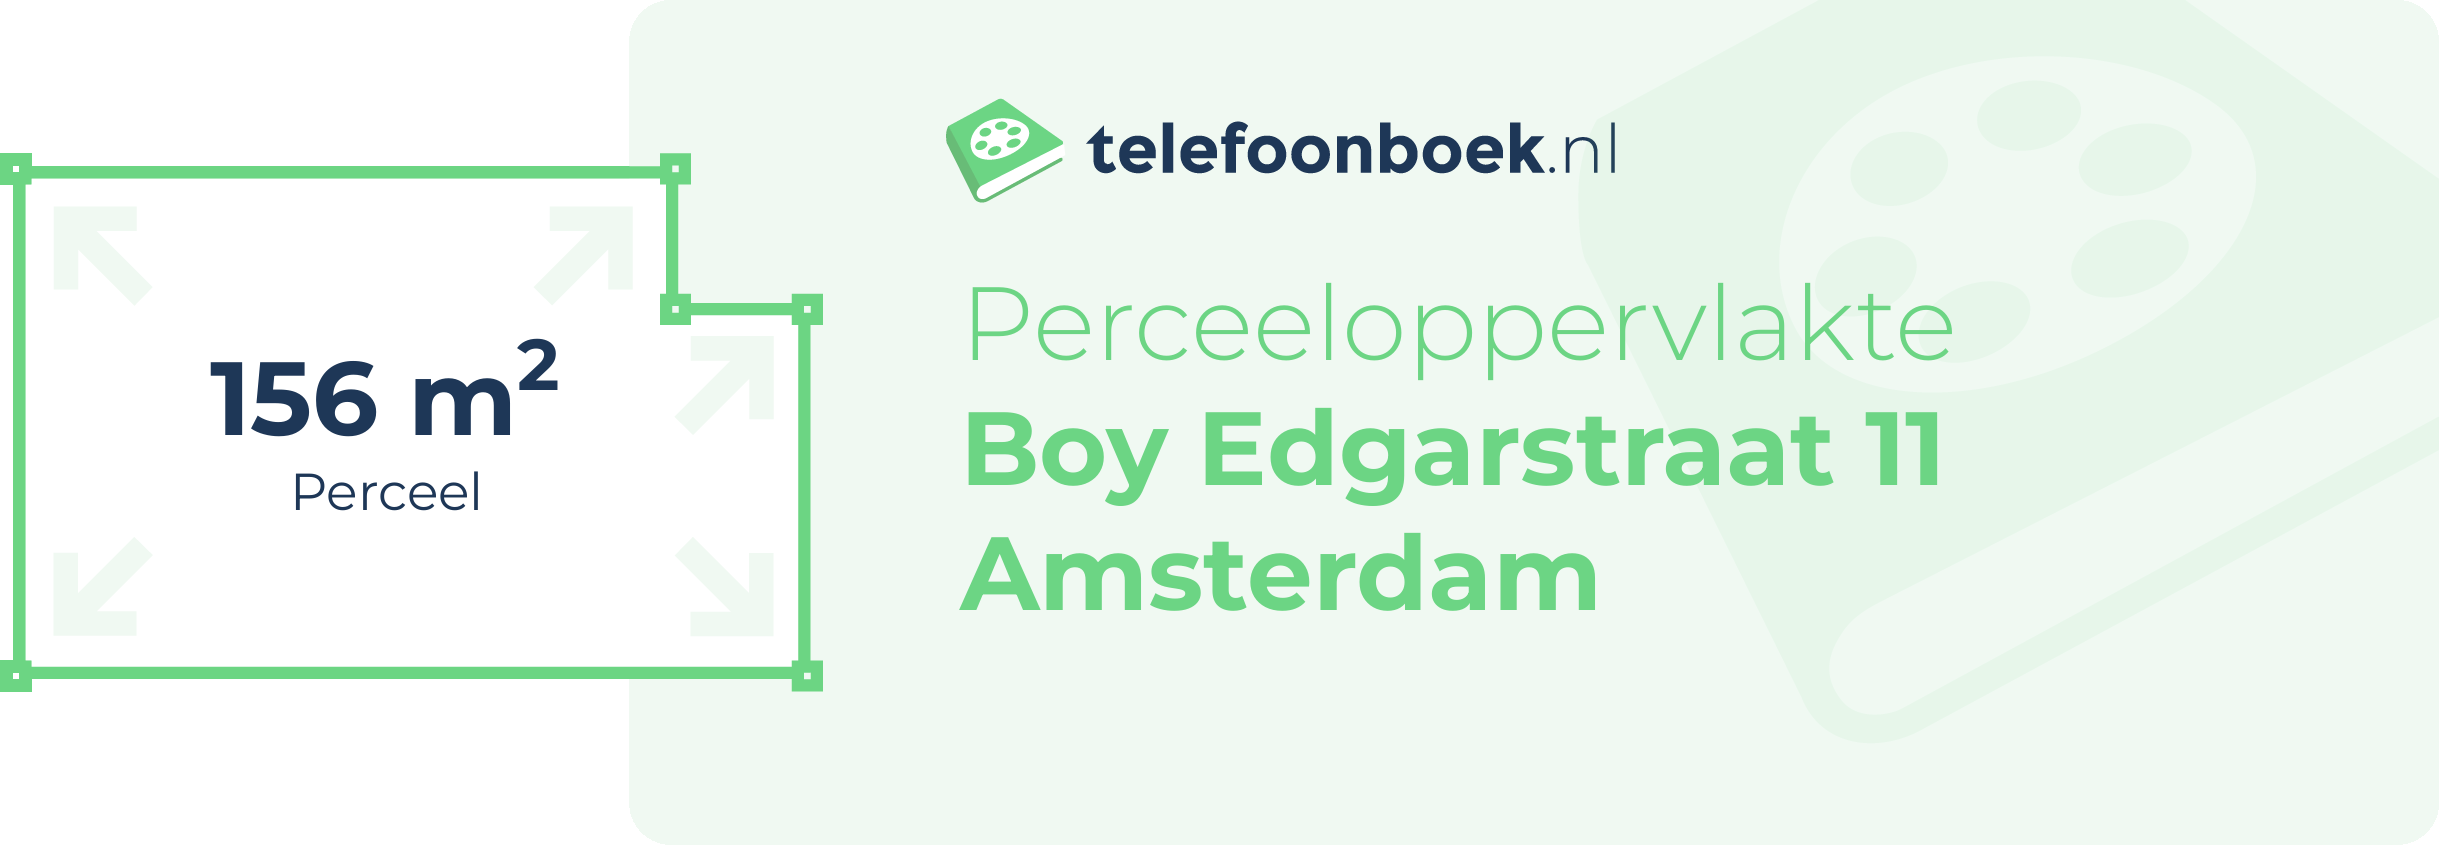 Perceeloppervlakte Boy Edgarstraat 11 Amsterdam